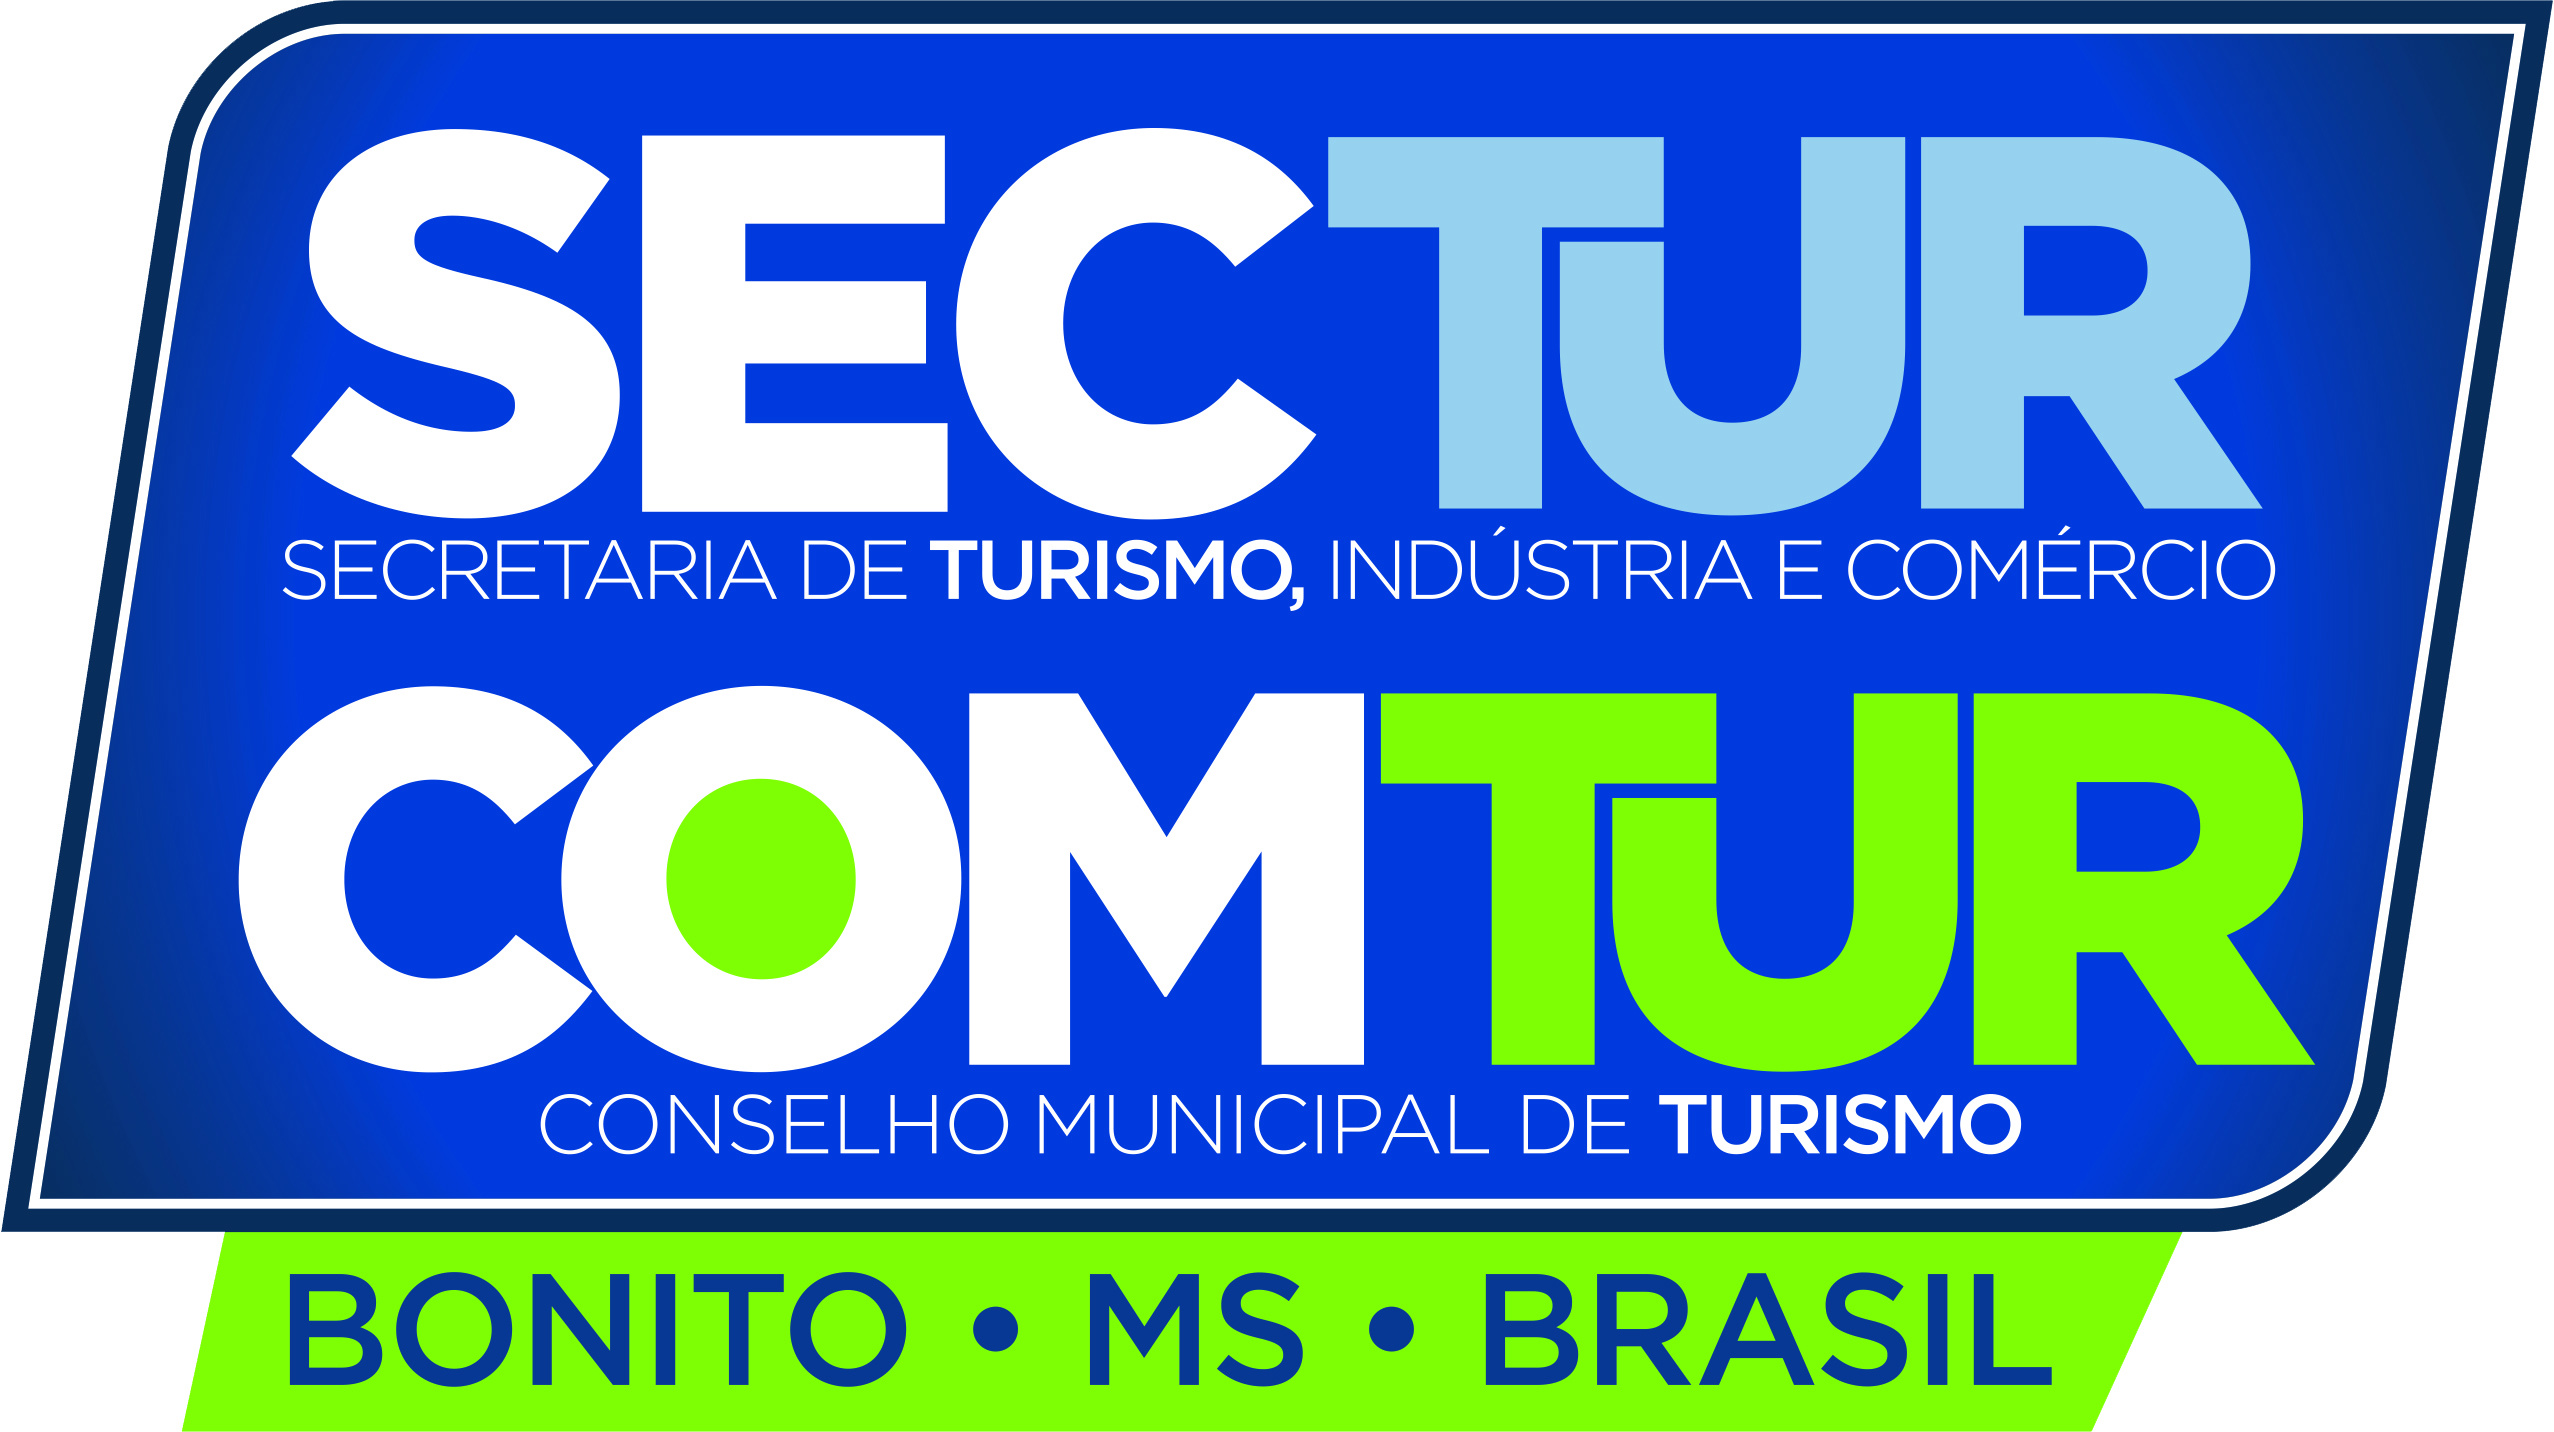 Conselho Municipal de Turismo de Bonito completa 20 anos